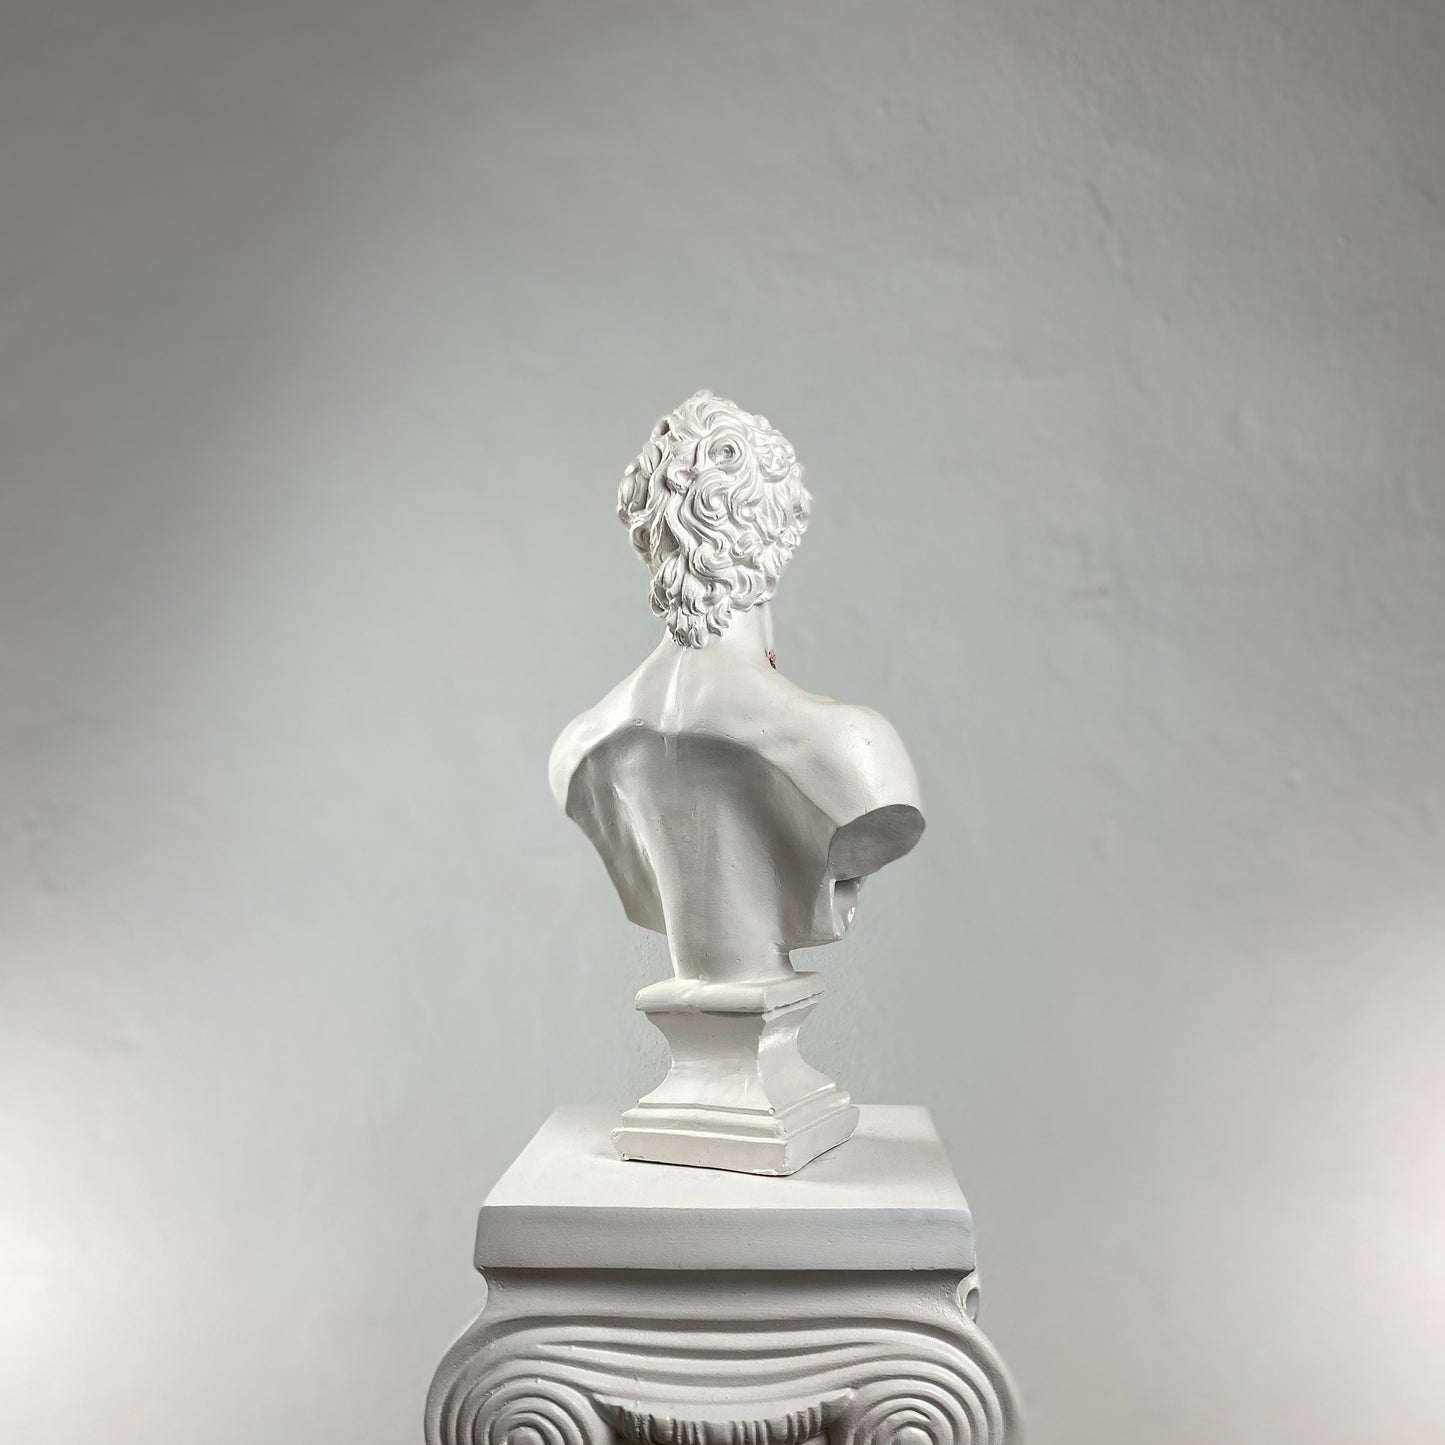 David 'Cut Throat' Pop Art Sculpture, Modern Home Decor, Large Sculpture